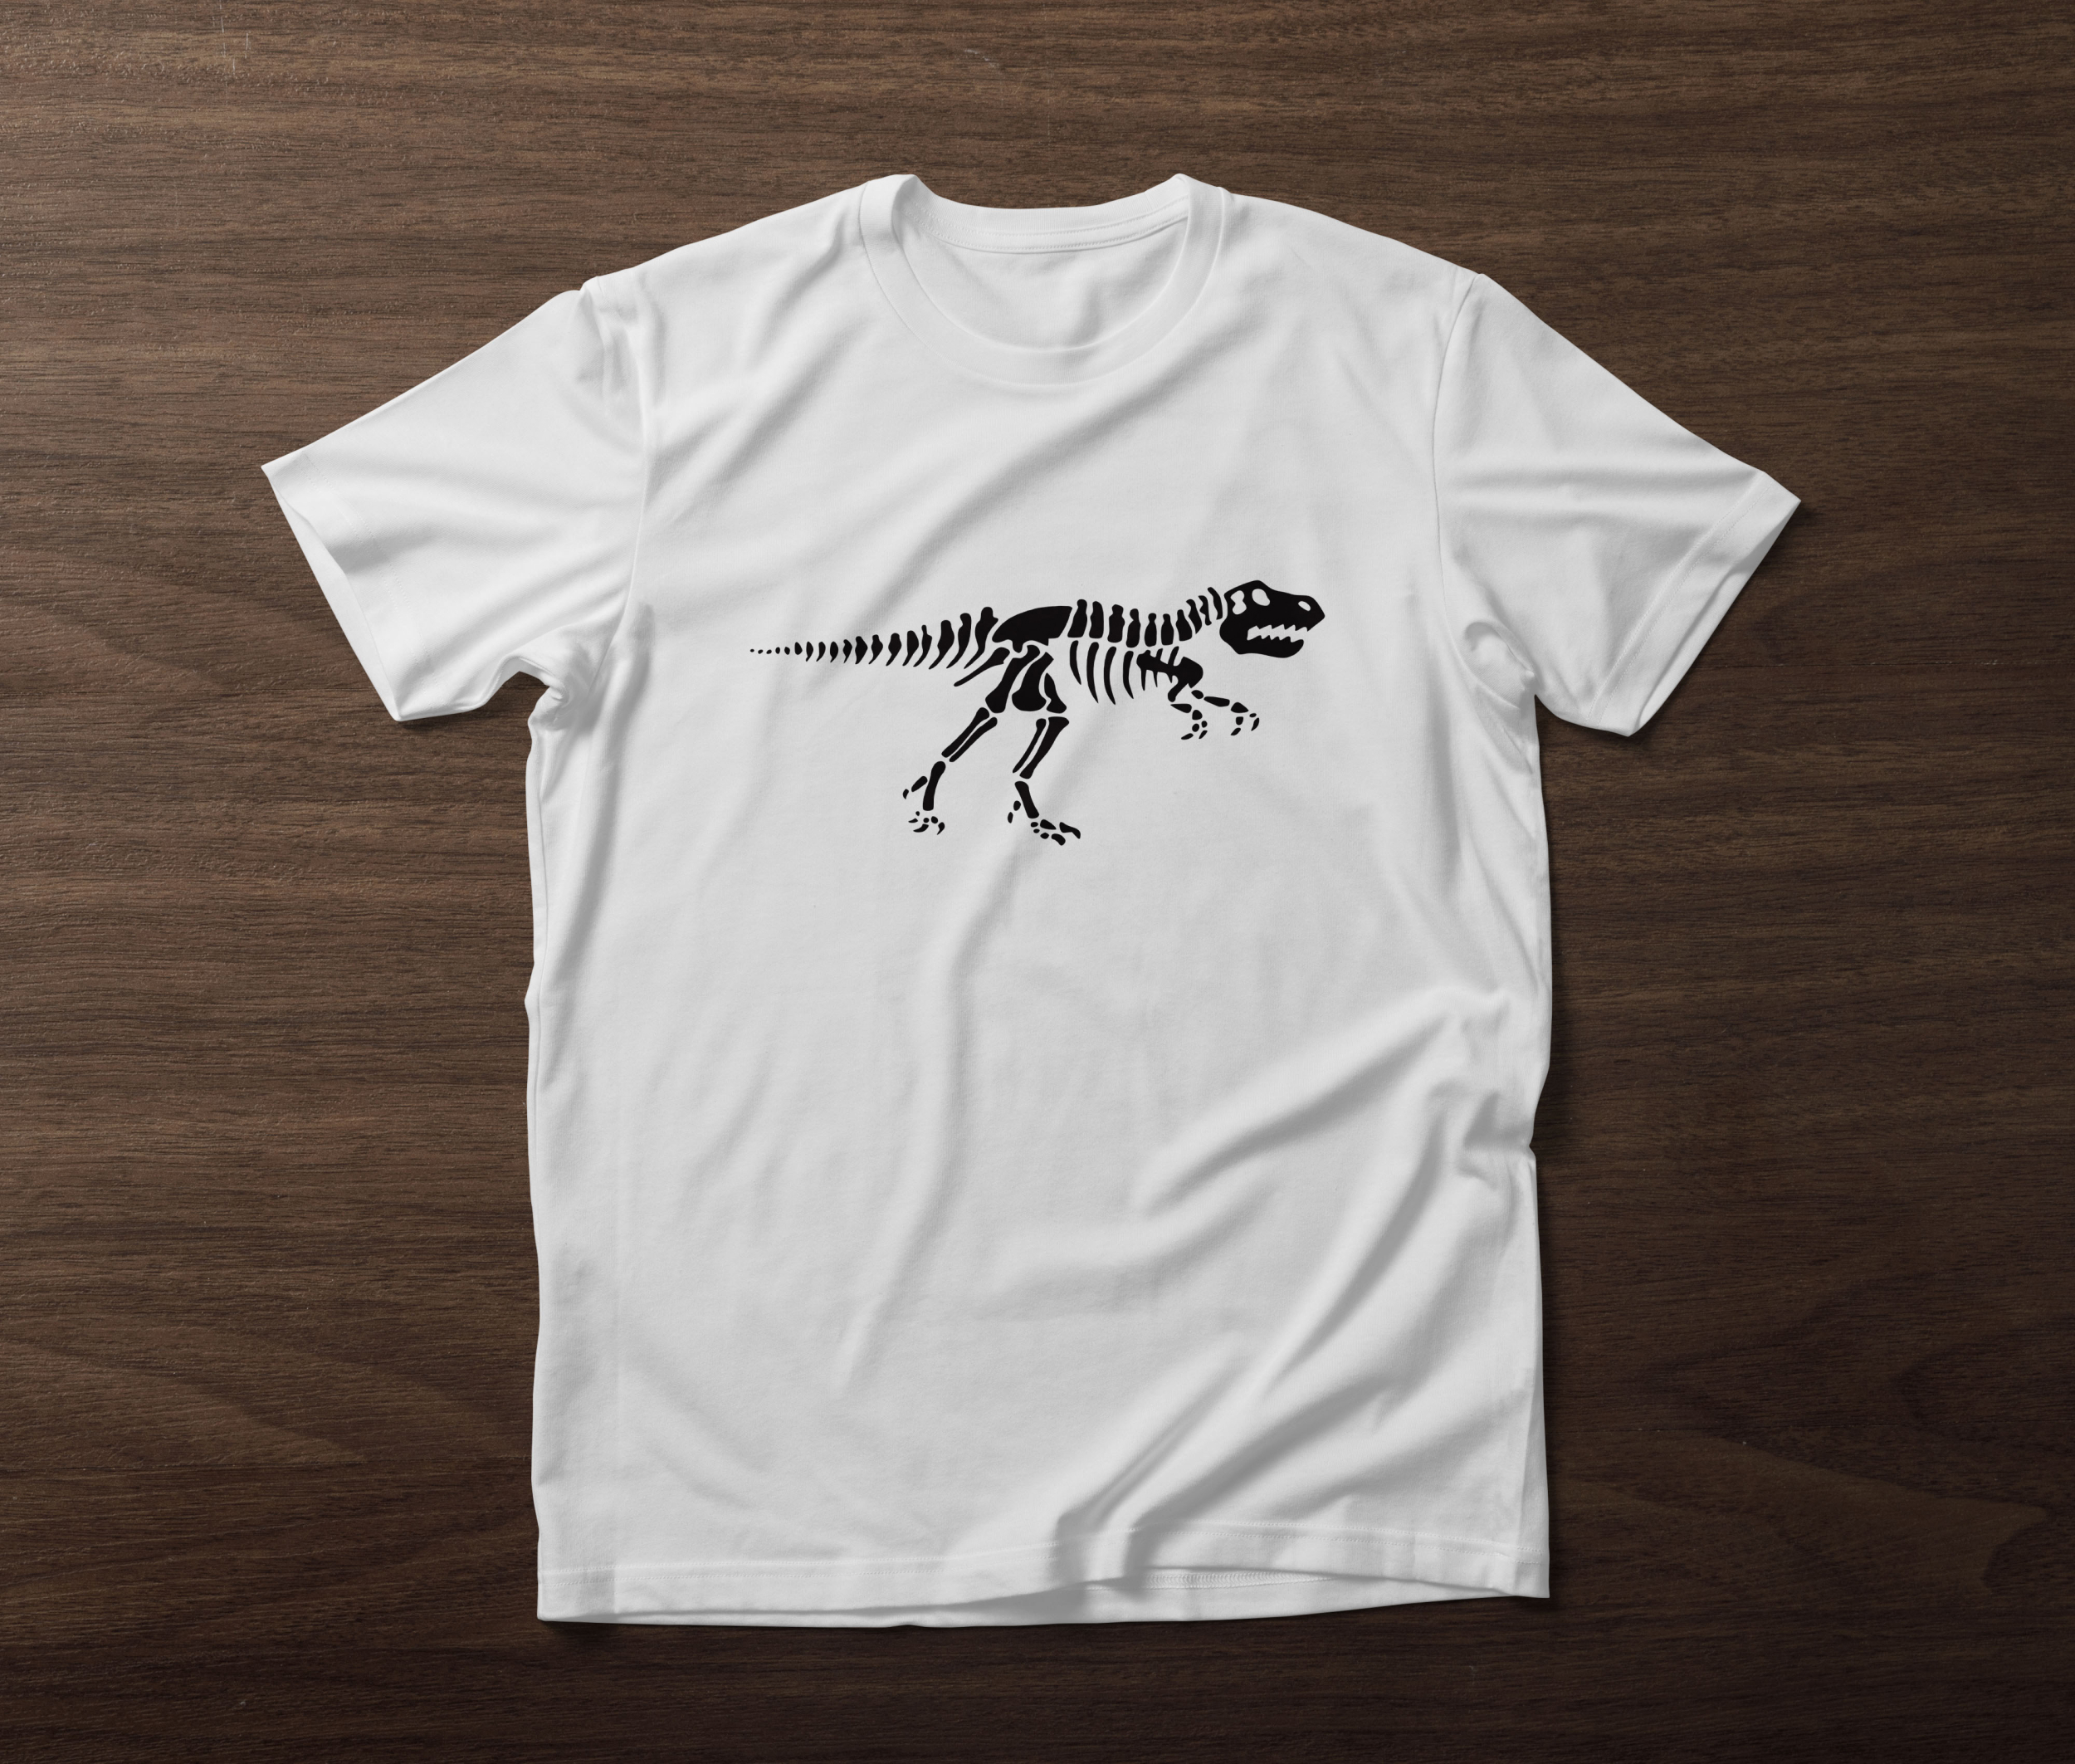 t rex skeleton t shirt designs bundle 07 312